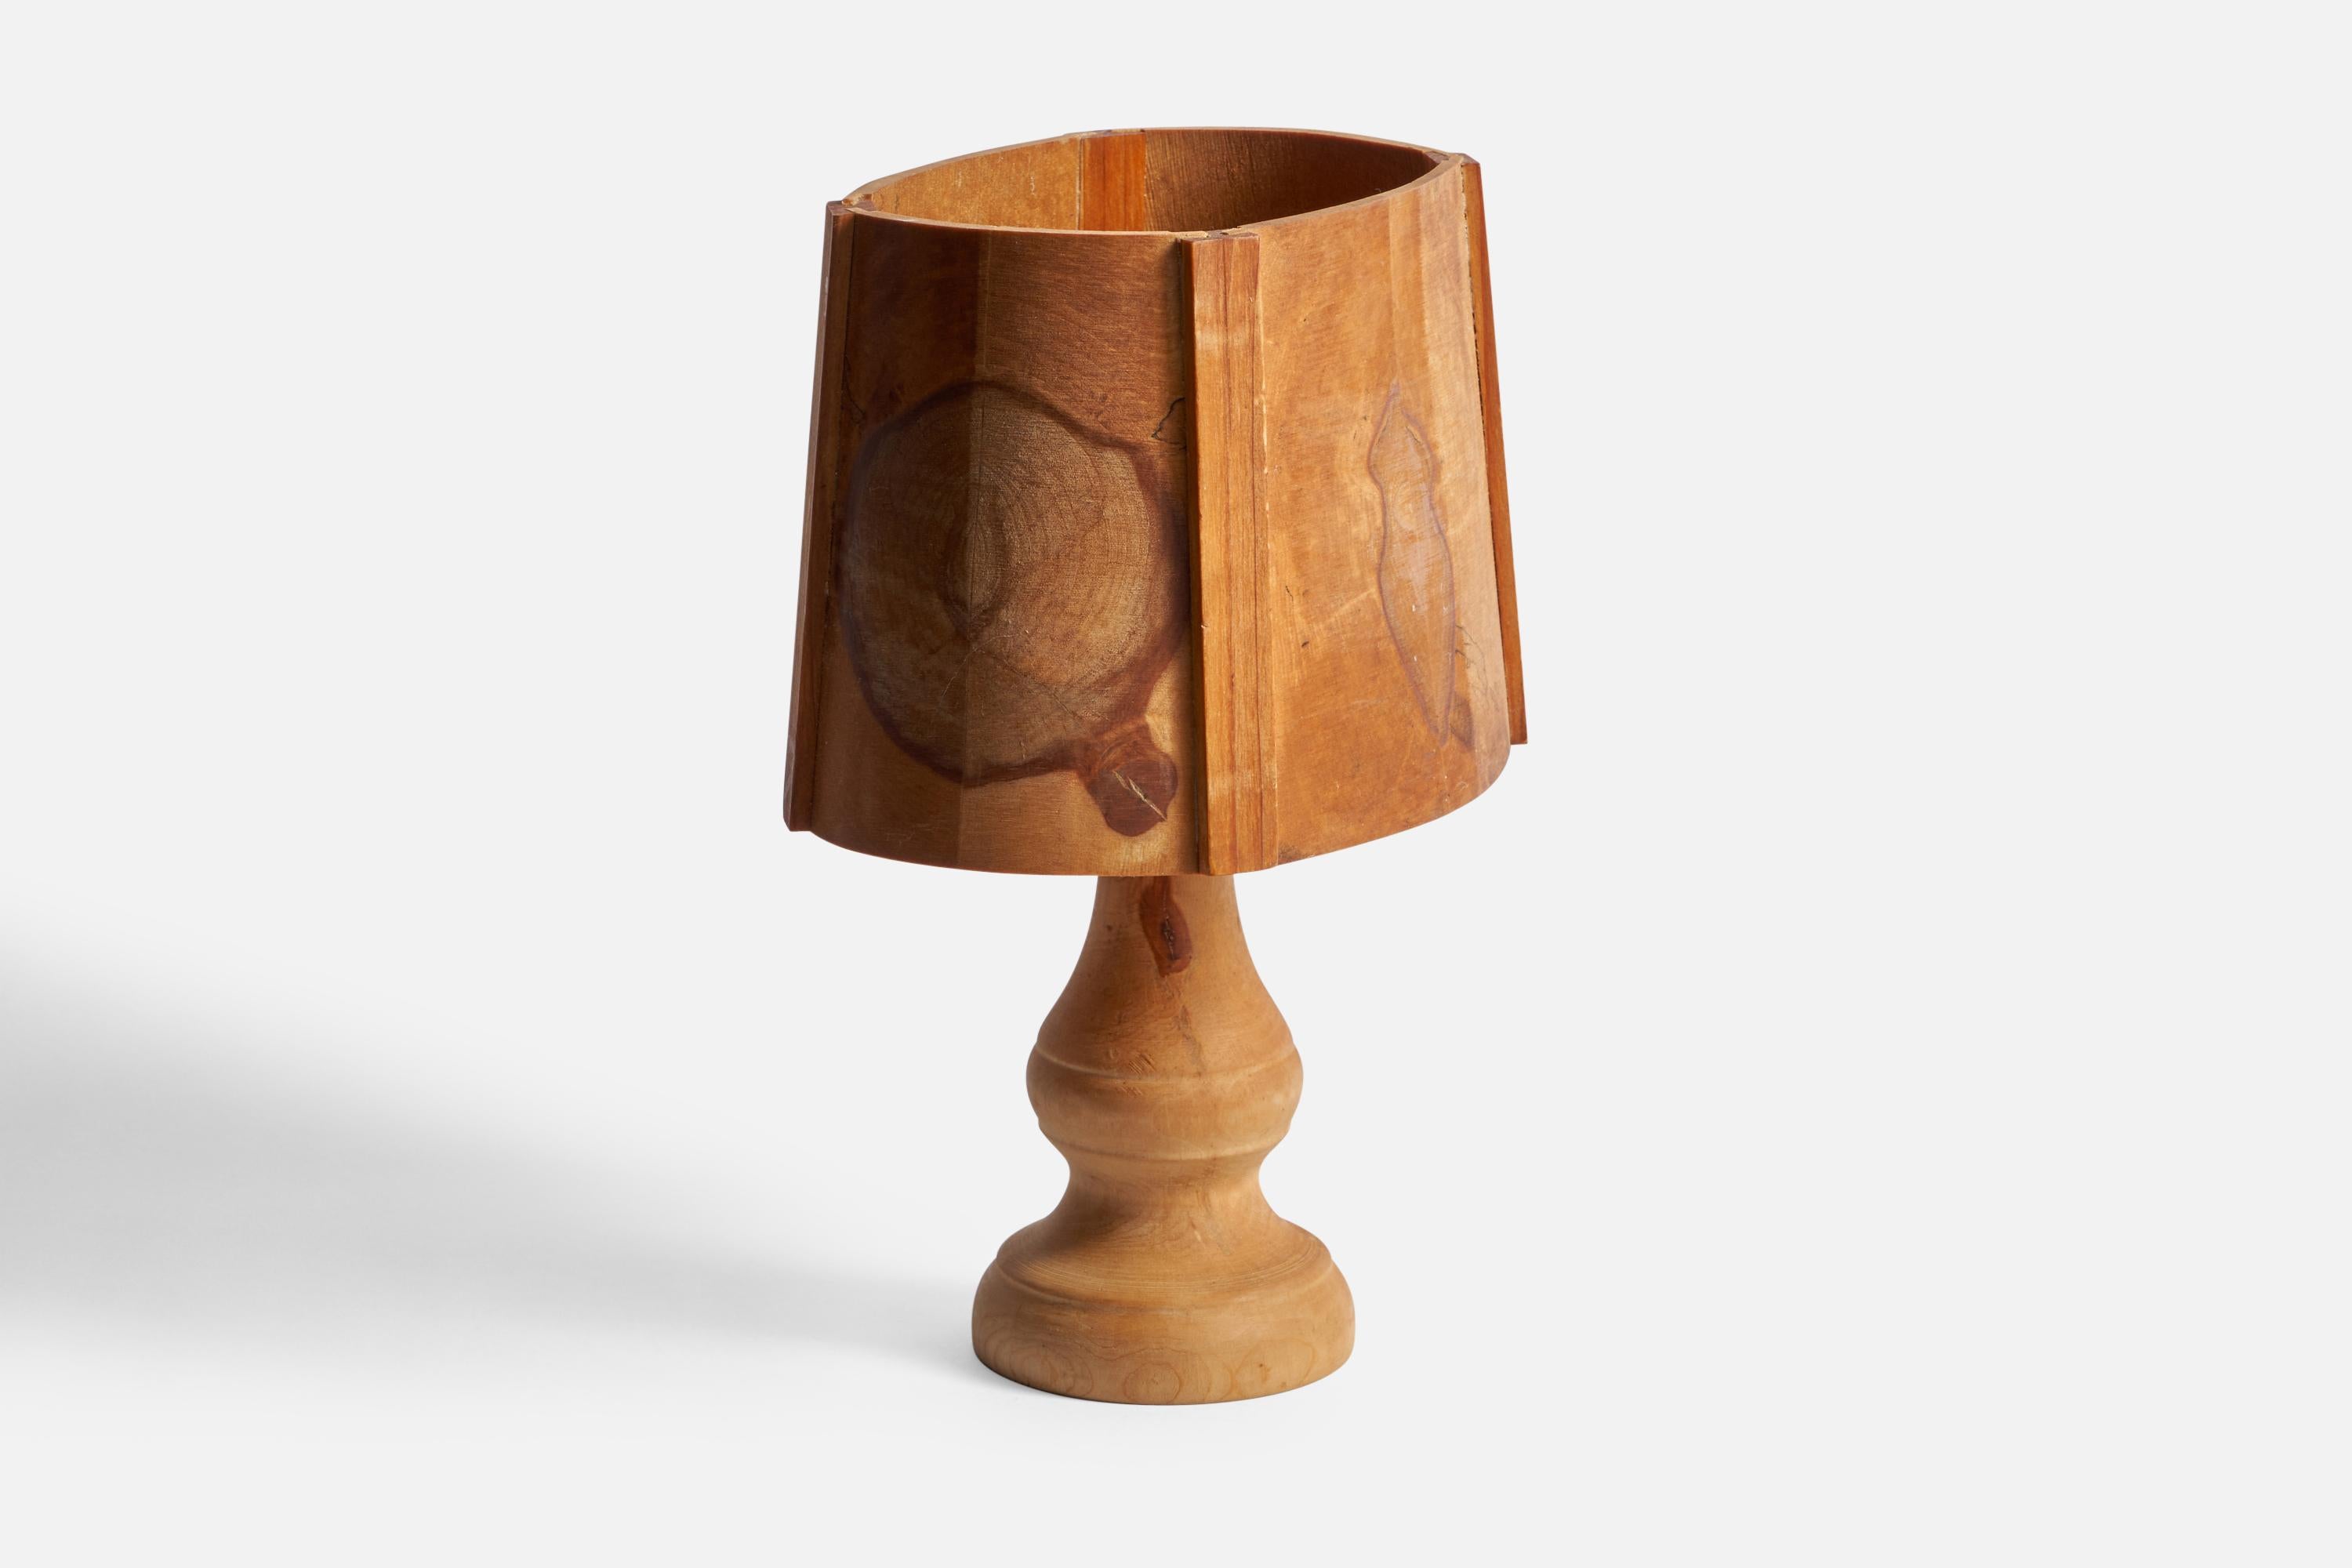 Lampe de table en bois conçue et produite en Suède, années 1970.

Dimensions globales (pouces) : 11.25